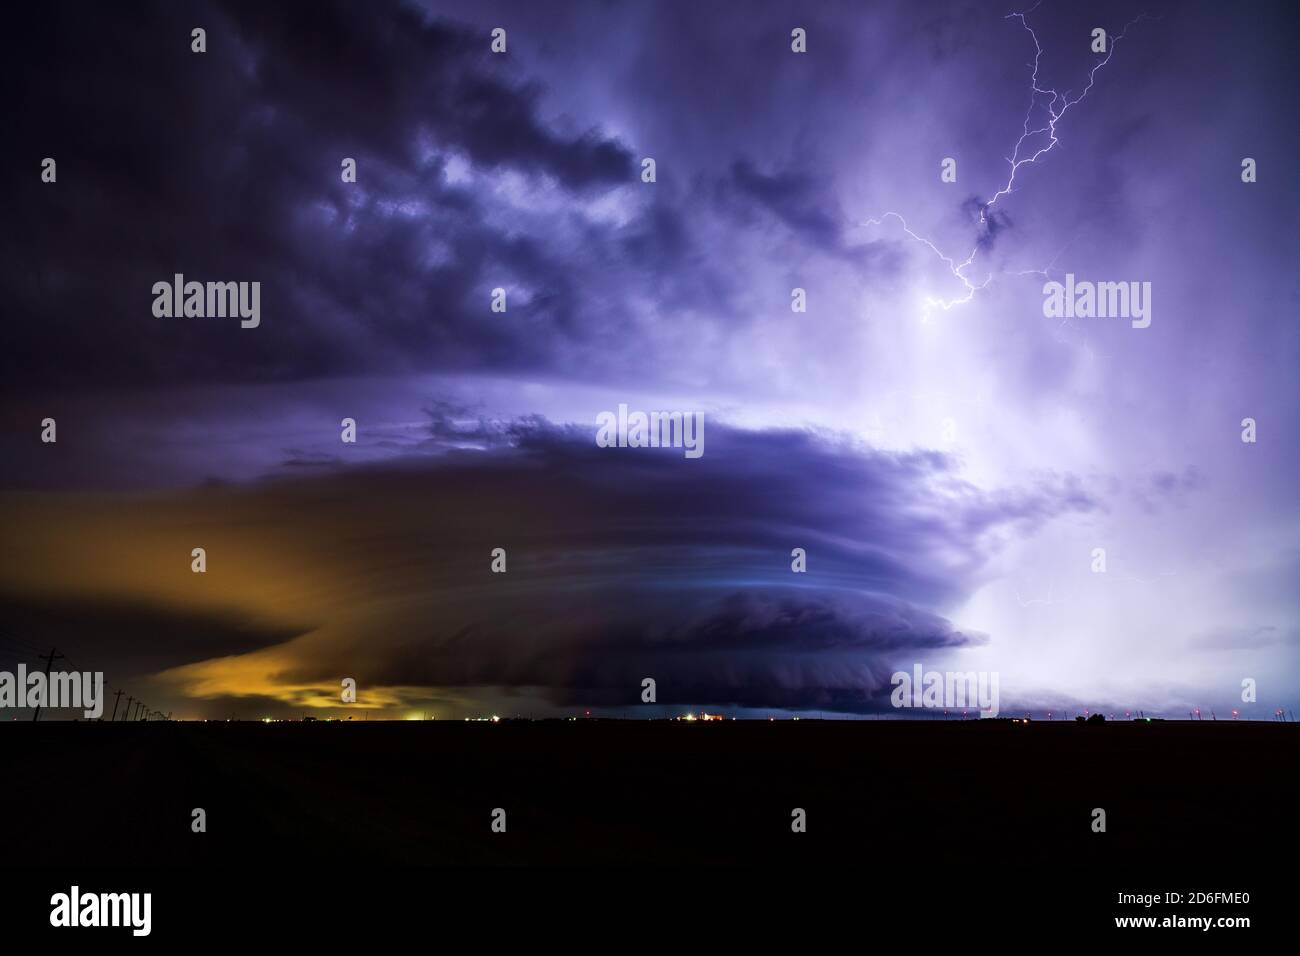 La foudre illumine un orage supercellulaire avec des nuages d'orage spectaculaires lors d'un événement météorologique violent au-dessus de Dodge City, Kansas Banque D'Images